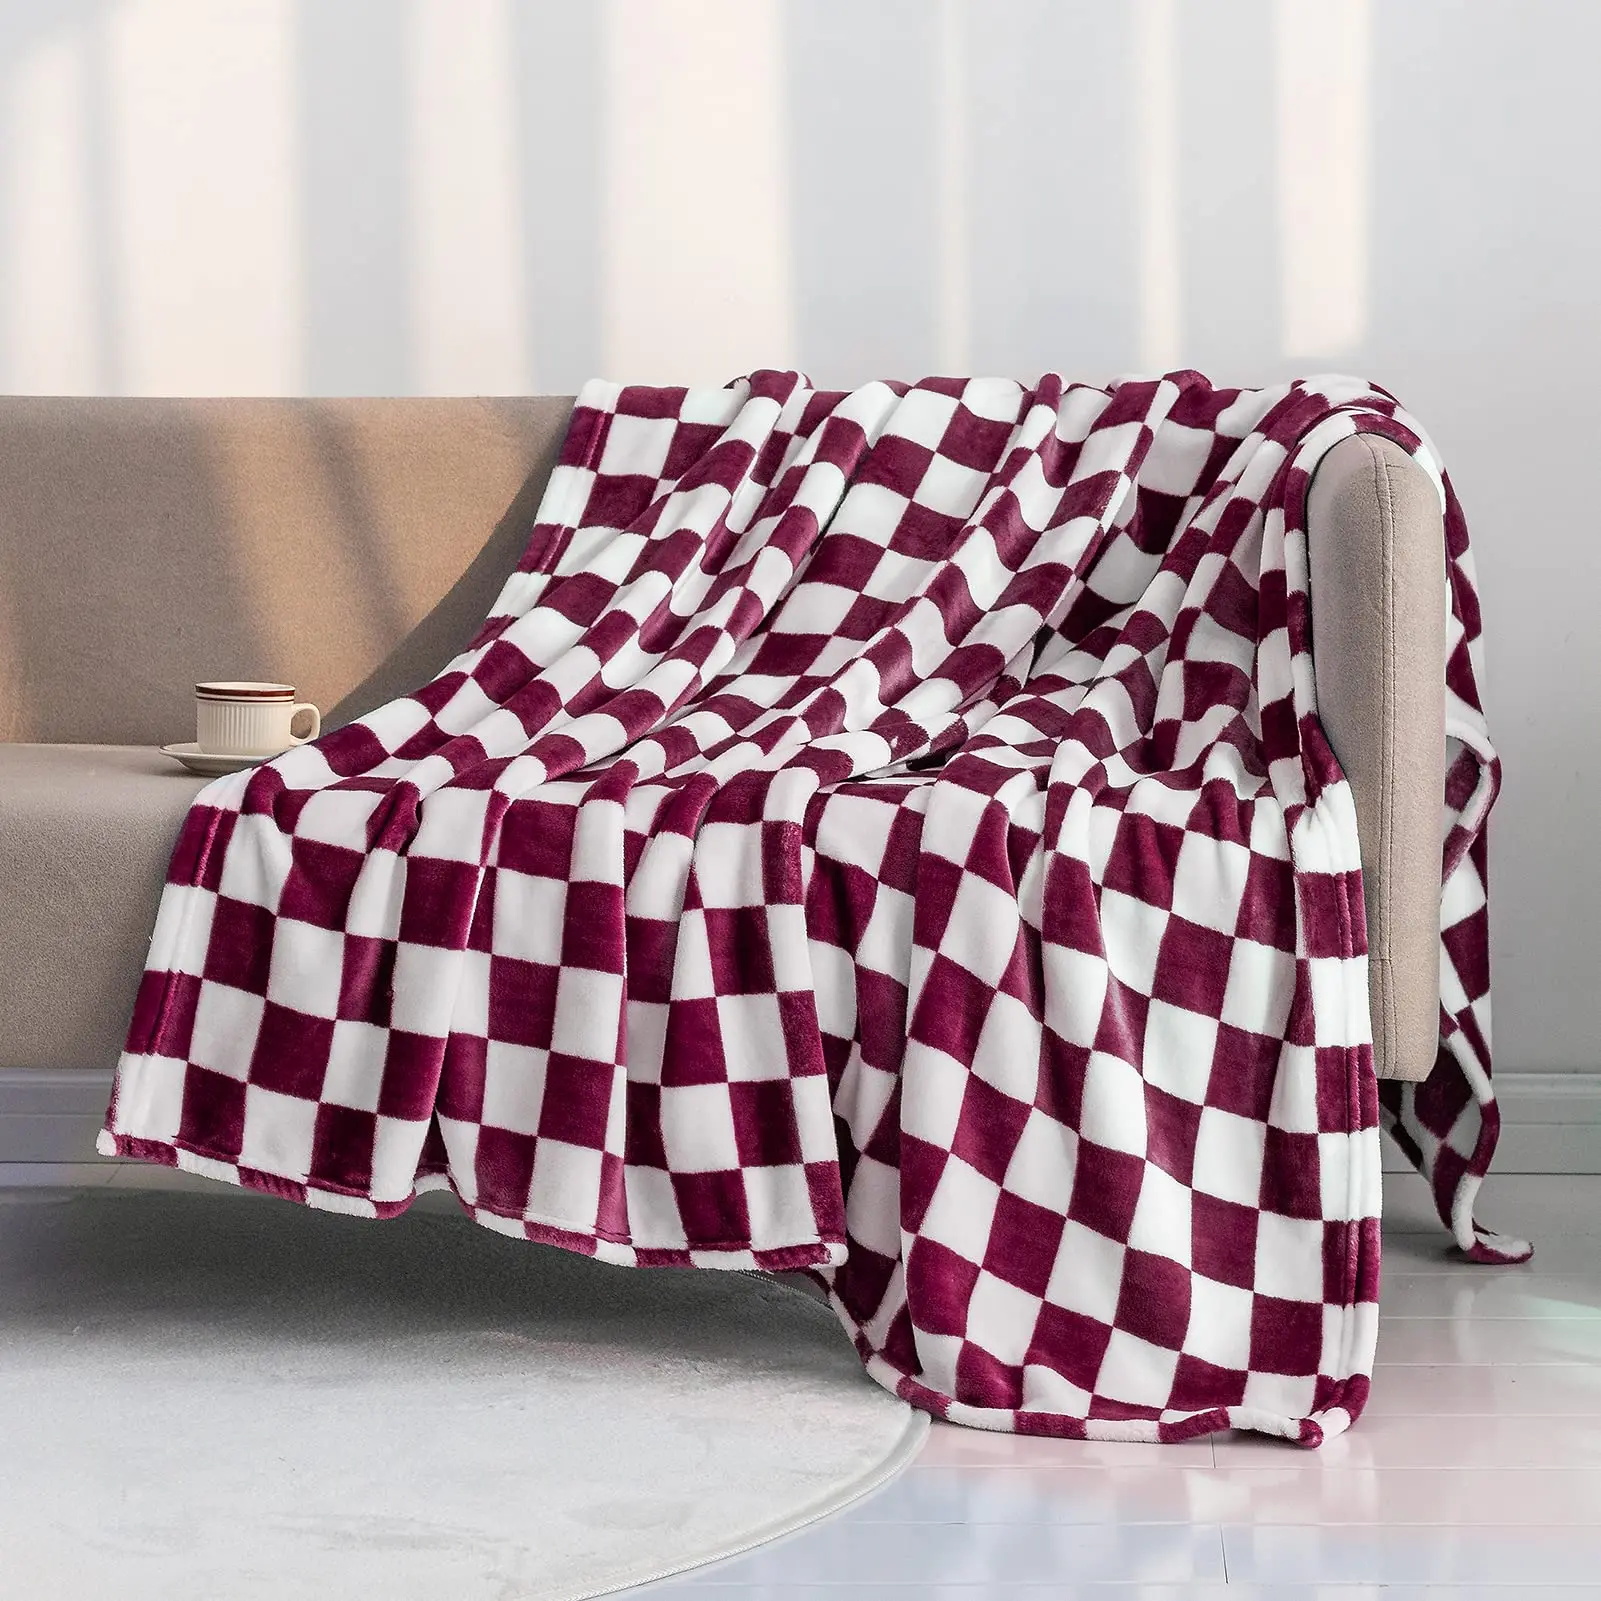 Черно-белое сетчатое одеяло, постельное белье с геометрическим рисунком в клетку, легкое теплое одеяло, пушистое мягкое для кровати, дивана, домашнего декора 2